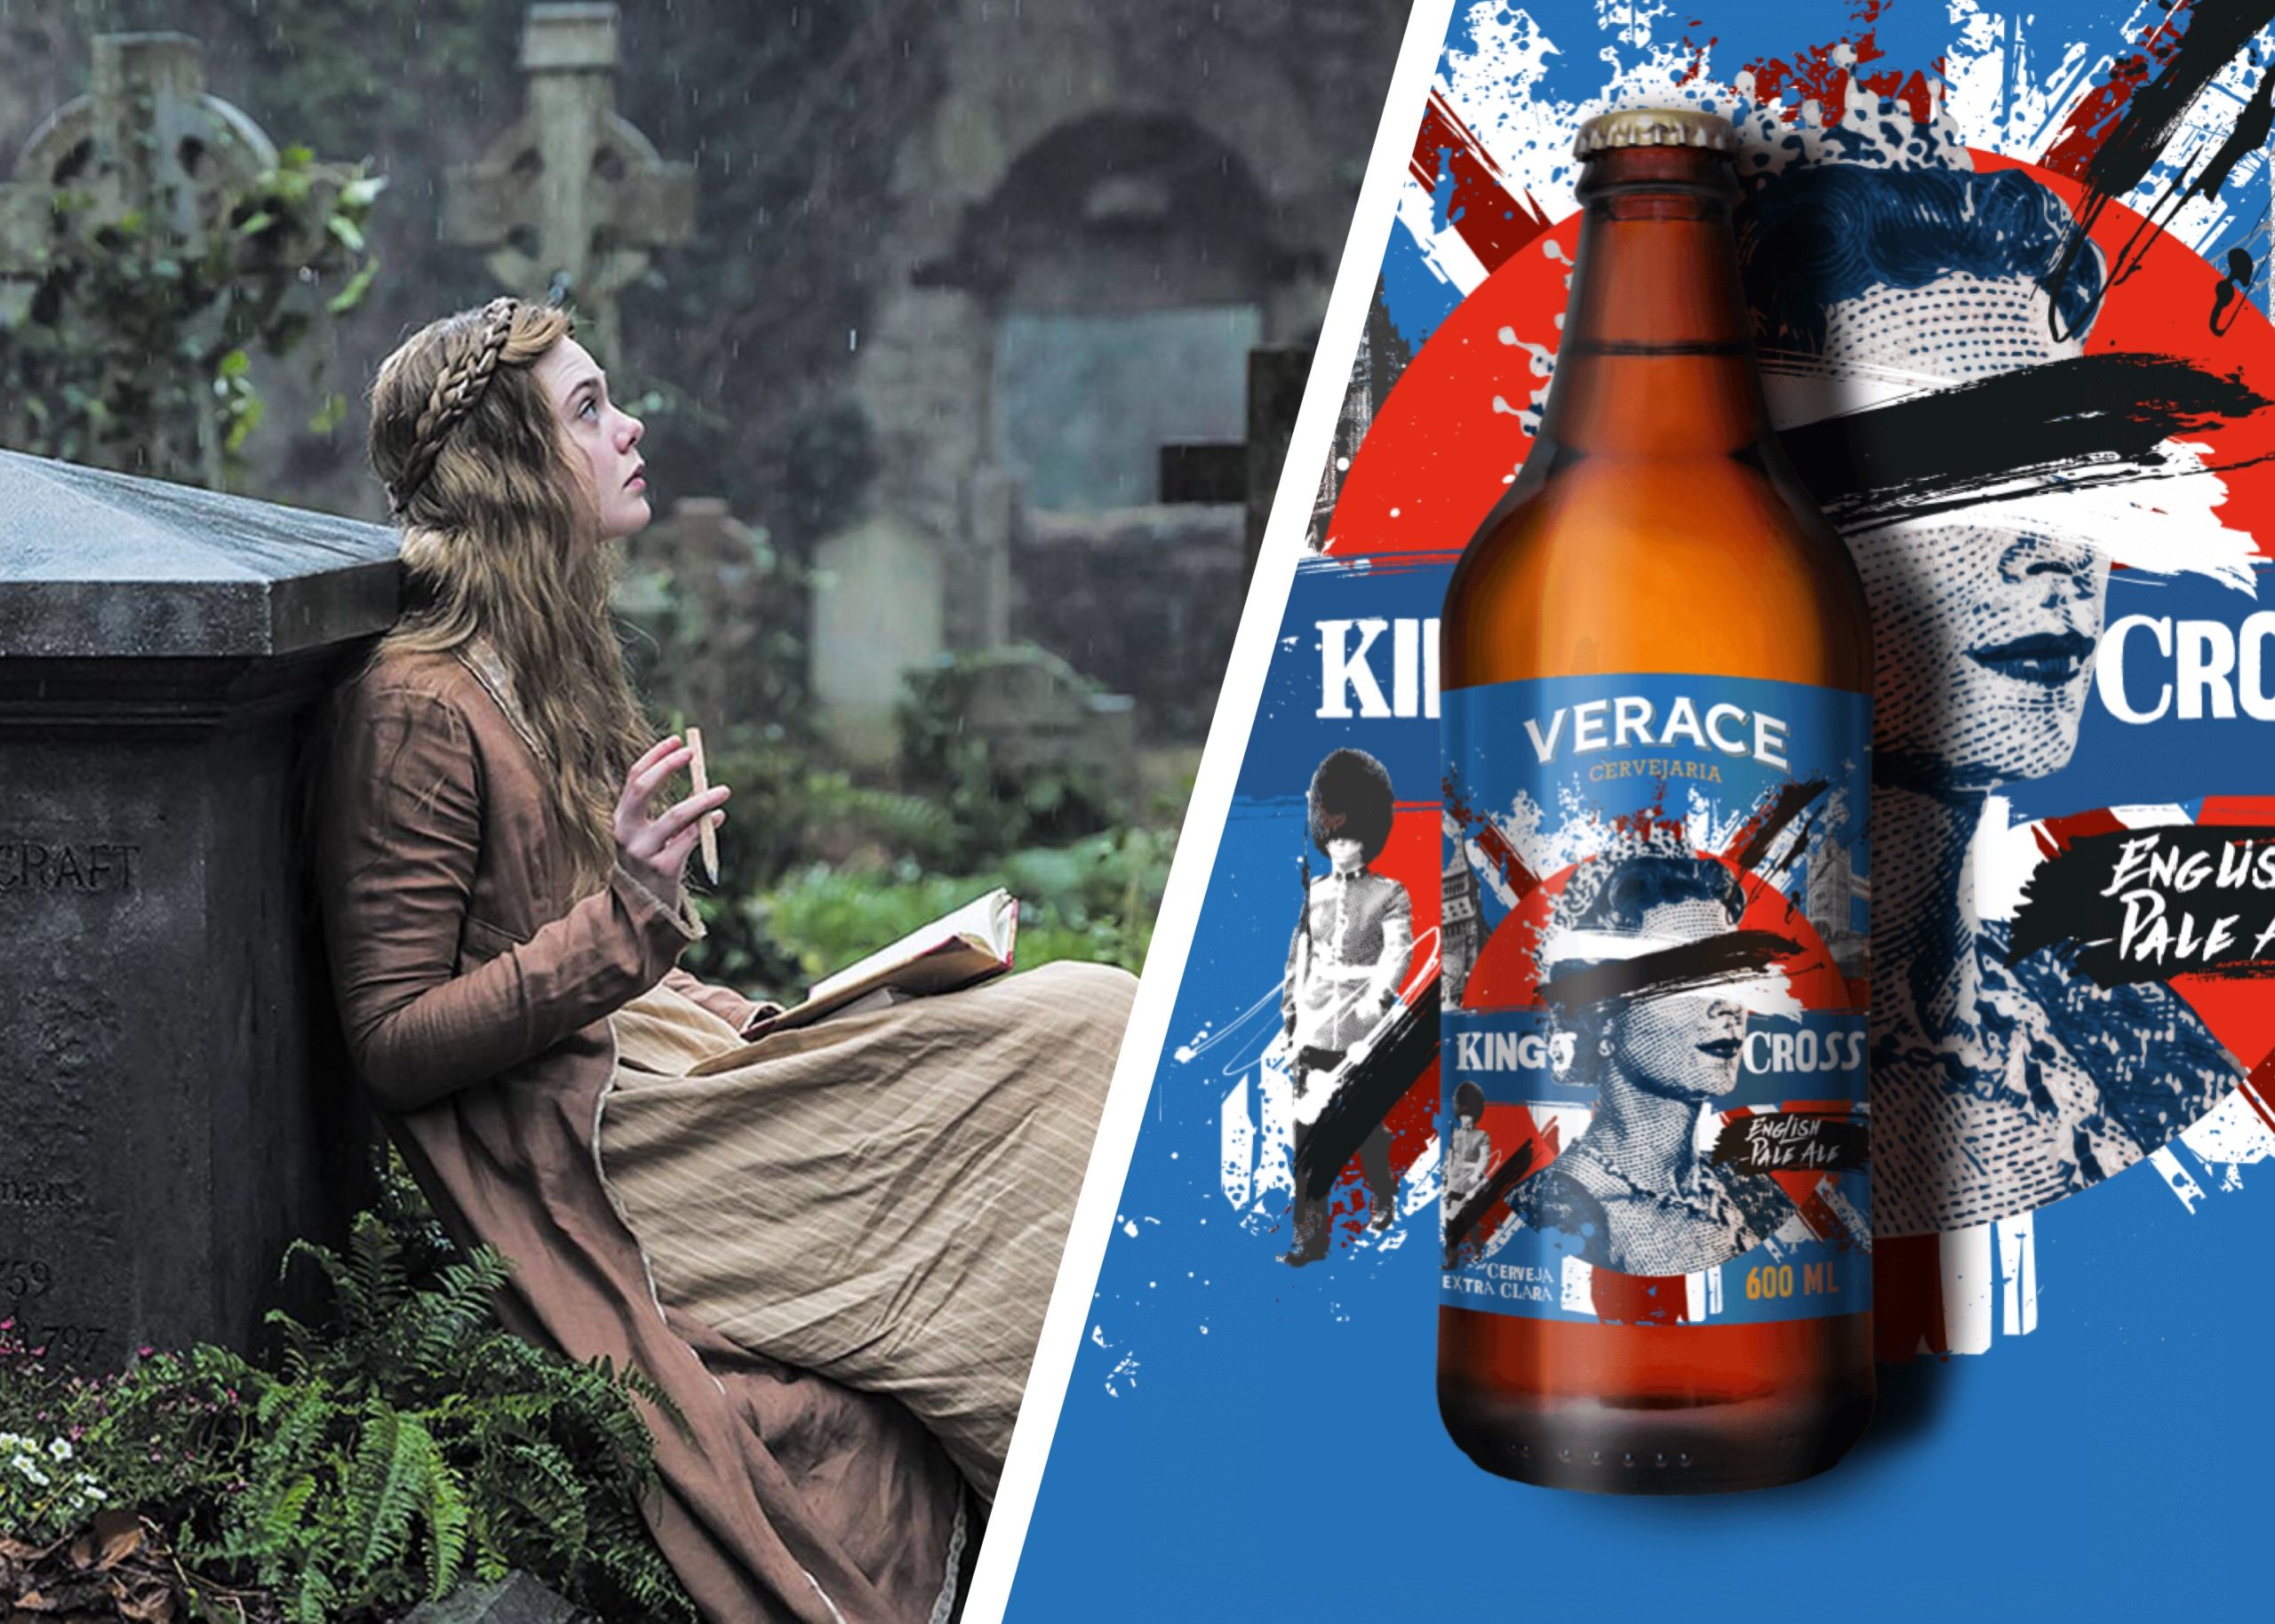 Mary Shelley e a cerveja King`s Cross são as dicas desta sexta-feira na coluna de cinema - Foto: Montagem com Divulgação/Parallel Films e Divulgação/Cervejaria Verace